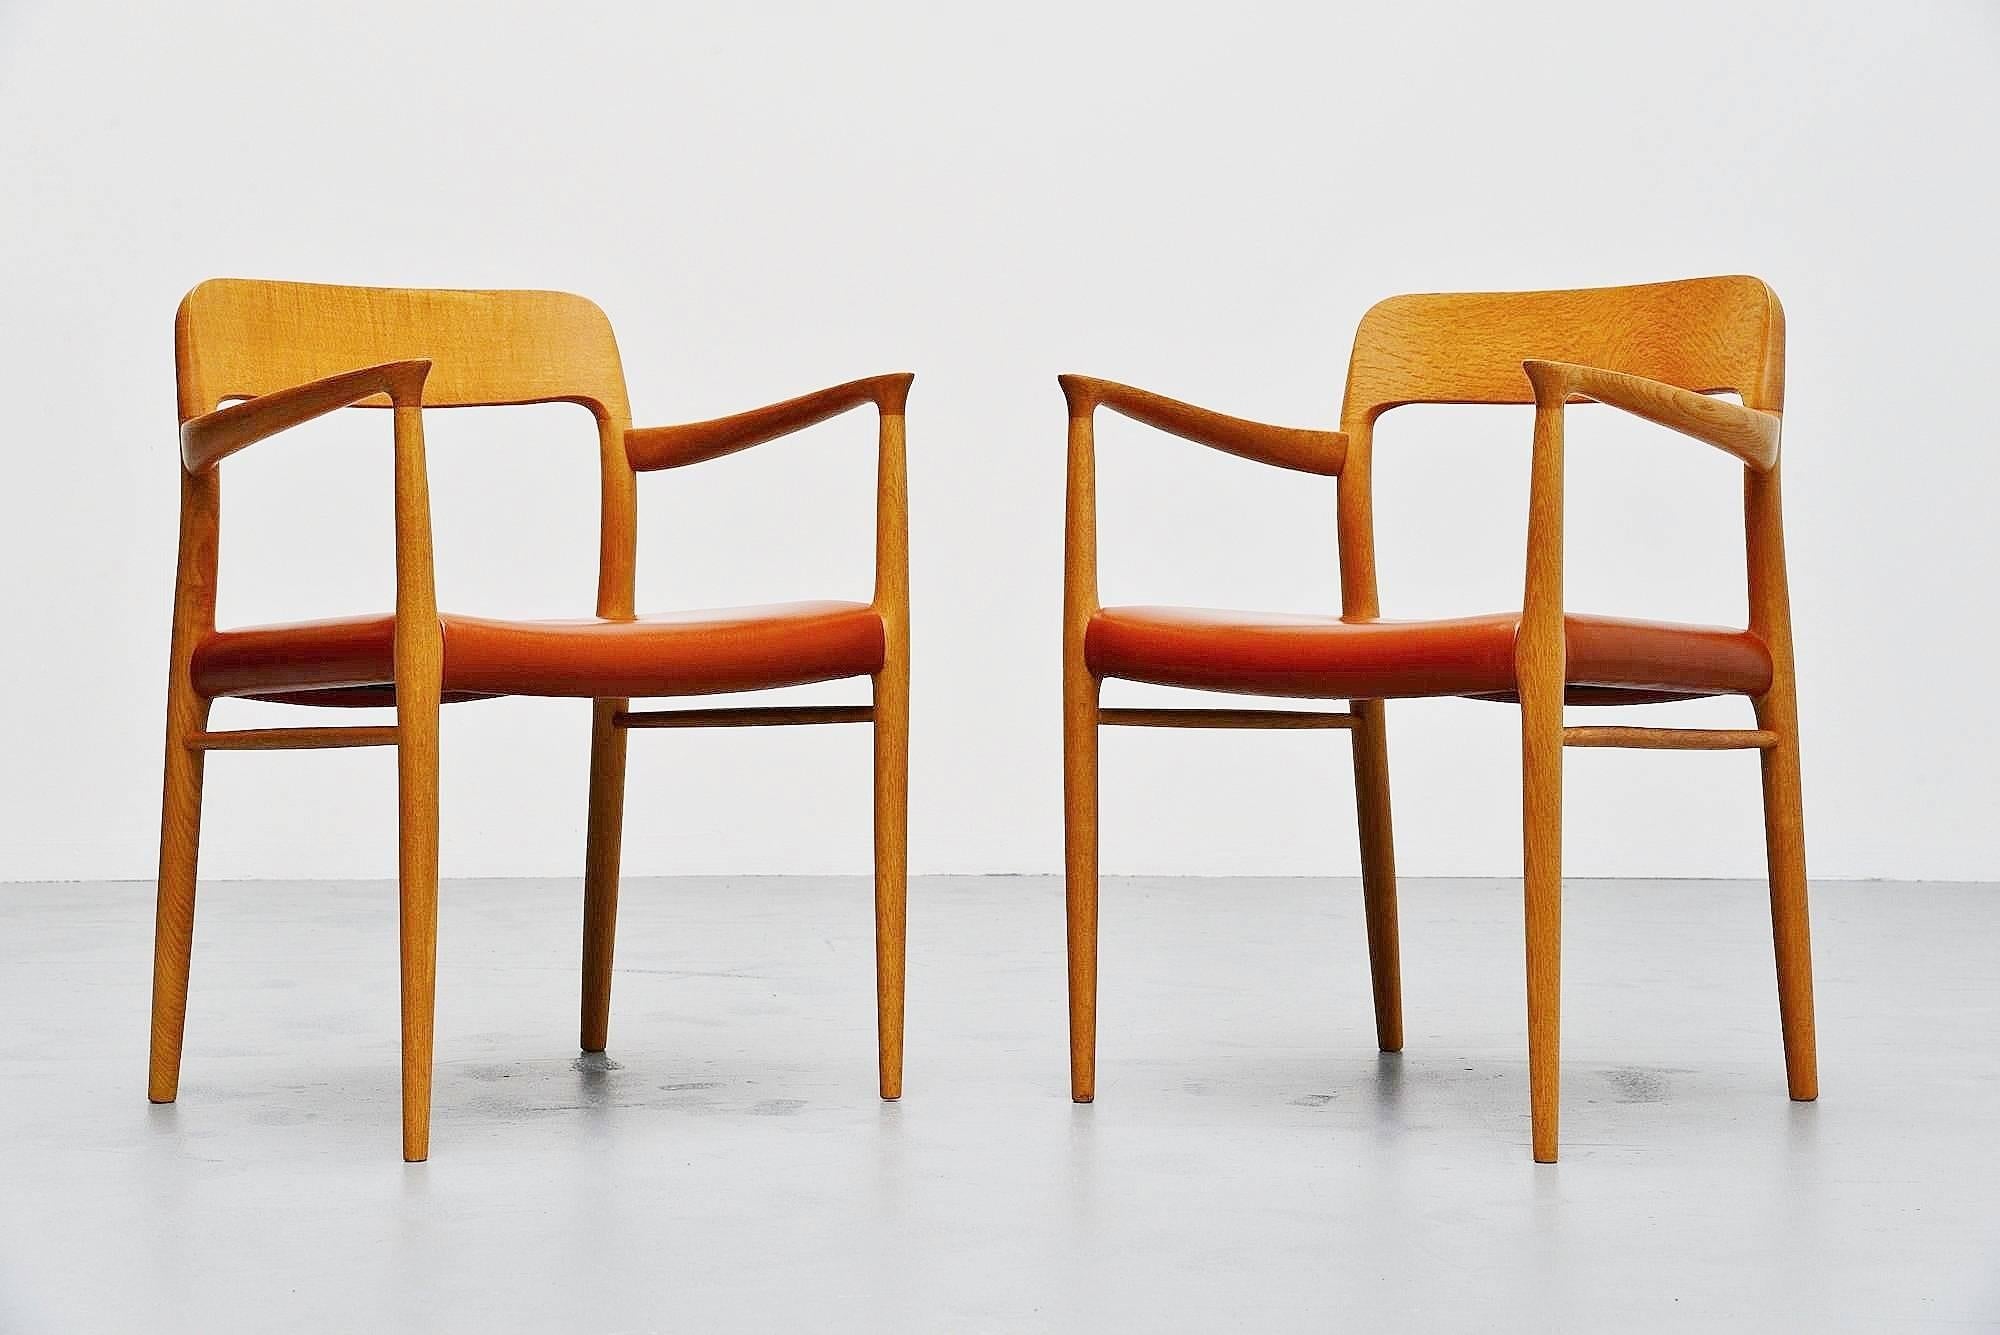 Très belle paire de fauteuils conçus par Niels Otto Moller, fabriqués par J.L.A. Møller Mobelfabrik, Danemark 1954. Ces chaises sont fabriquées en bois de chêne massif et sont recouvertes d'un très beau cuir cognac. Les chaises ont été très peu